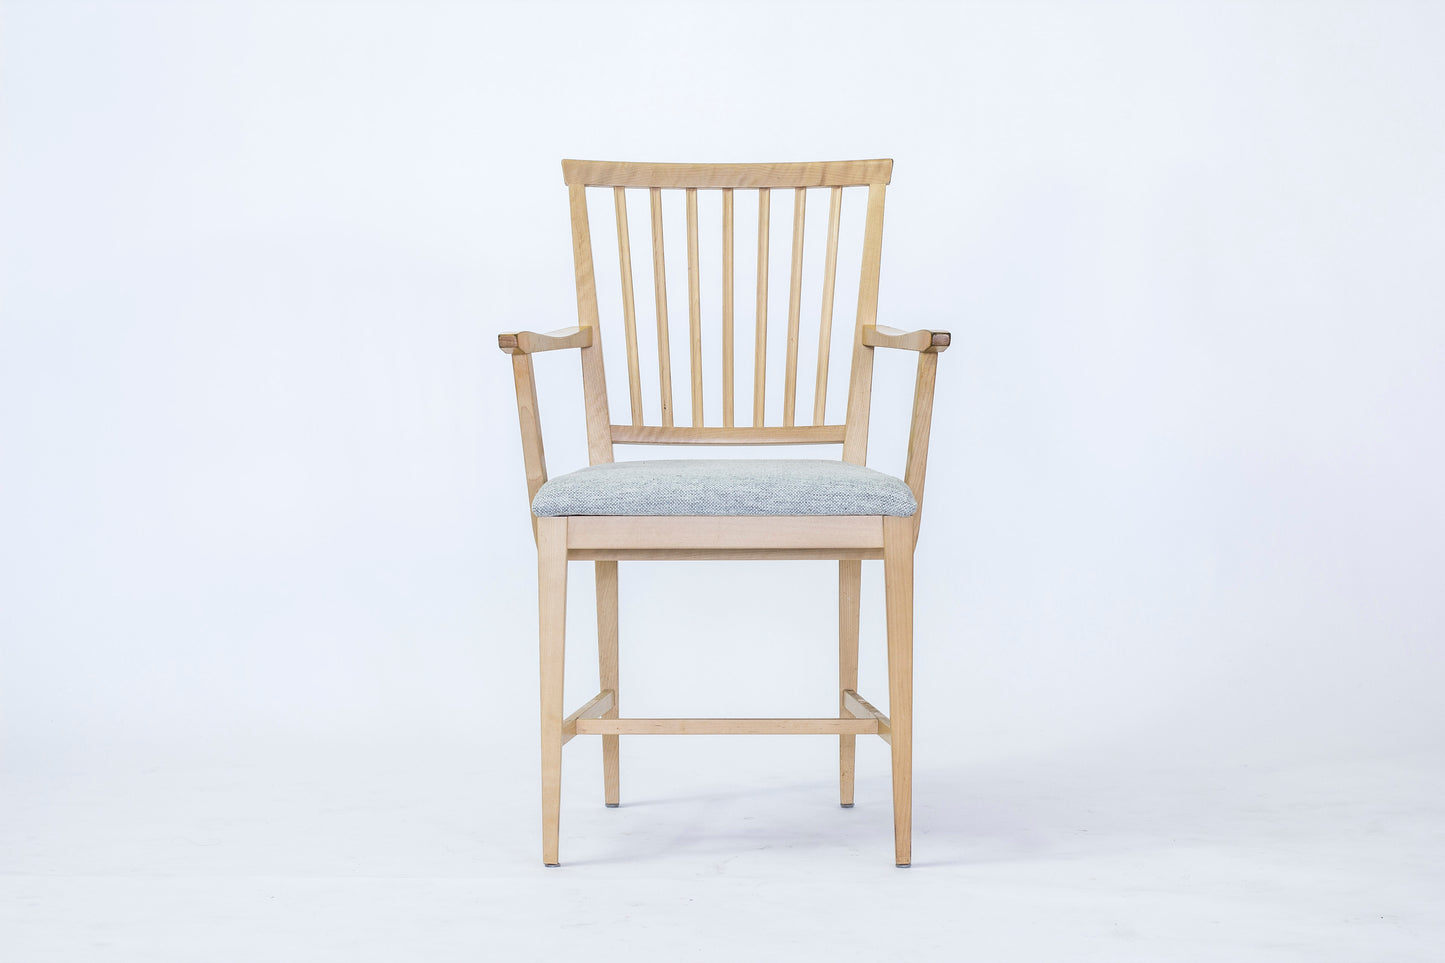 Carl Malmsten karmstol "Vardags". Tillverkad av Stolab. Nyklädd sits. H: 86cm, B: 55cm, D: 53cm Carl Malmsten armchair "Vardags". Made by Stolab. H: 86cm/33,9", B: 55cm/21,7", D: 53cm/20,9"